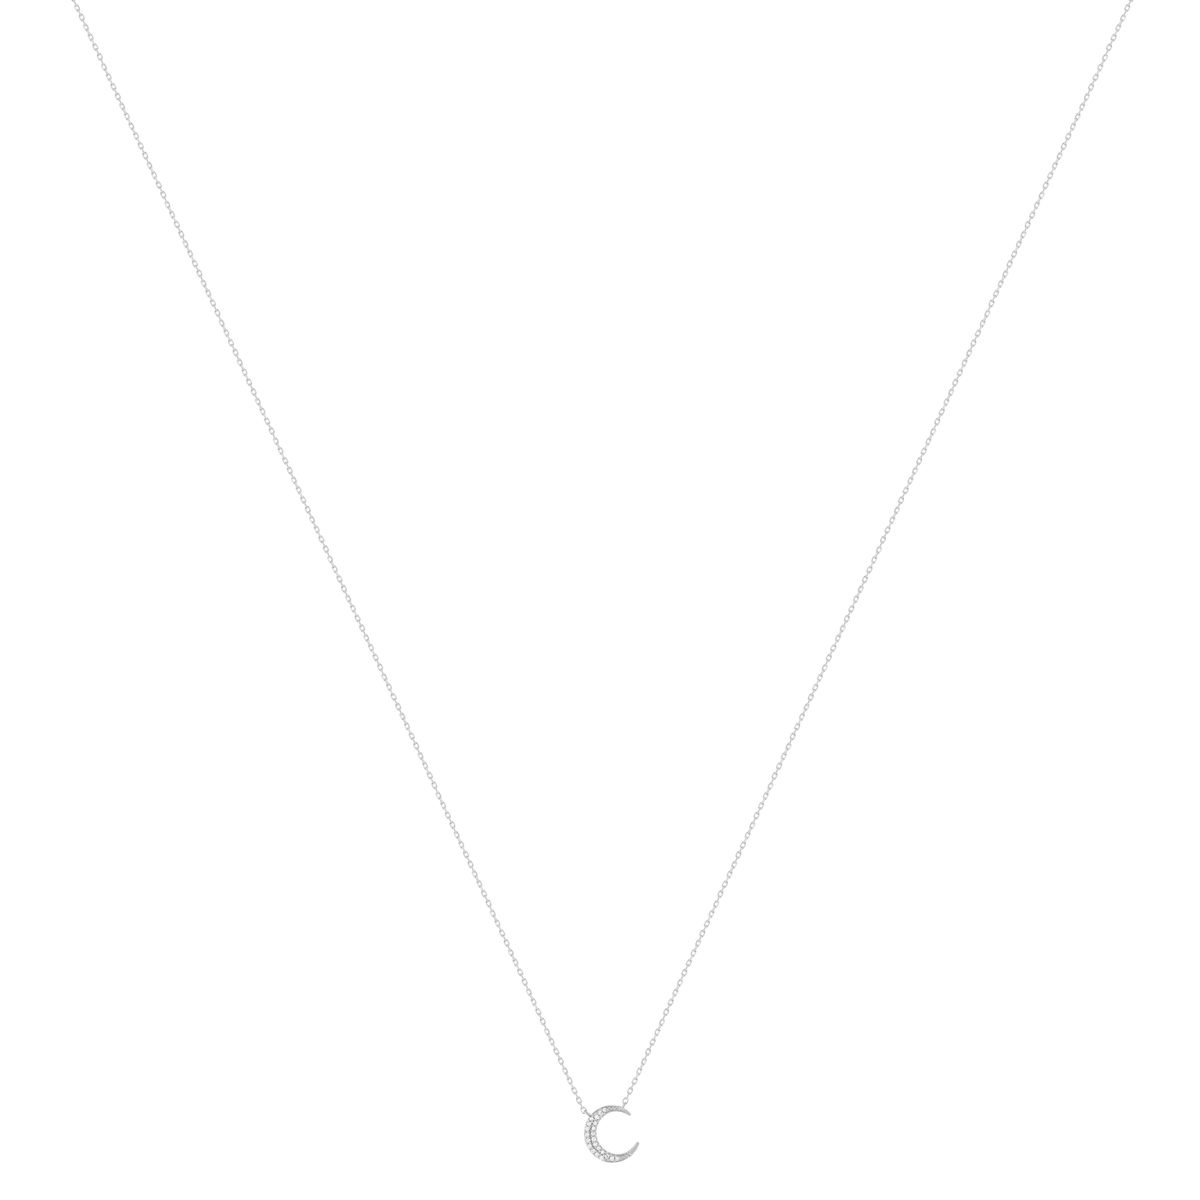 Collier or 375 blanc diamants, motif lune 45 cm - vue 2